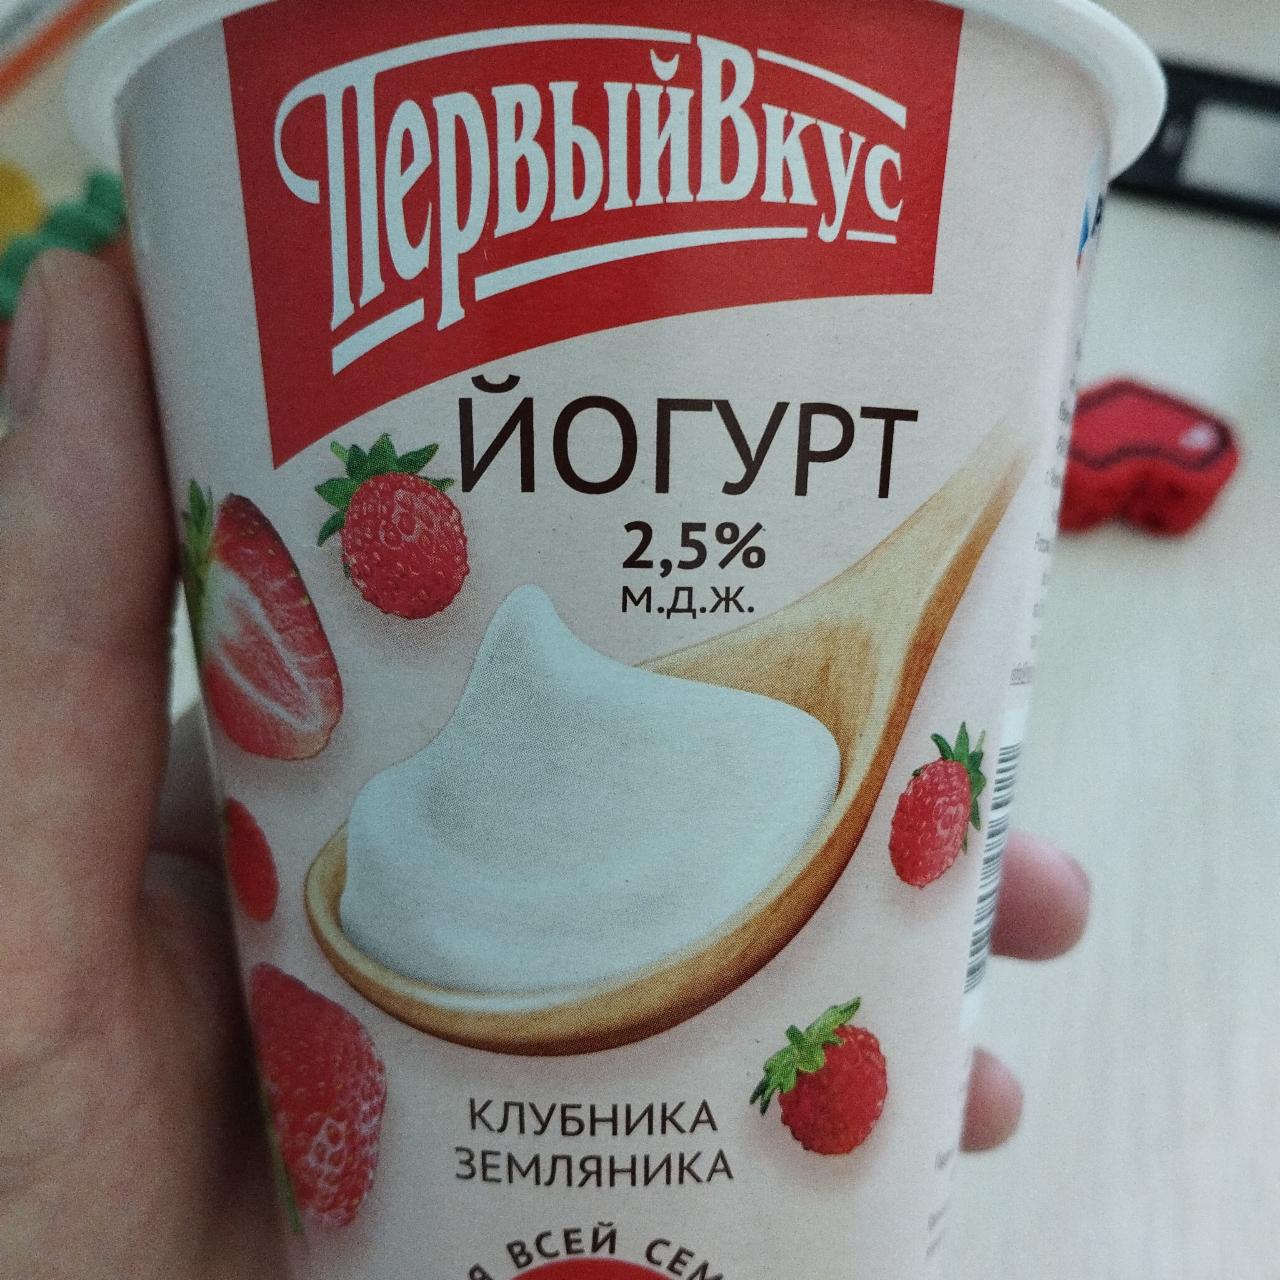 Фото - йогурт 2,5% клубника земляника Первый вкус